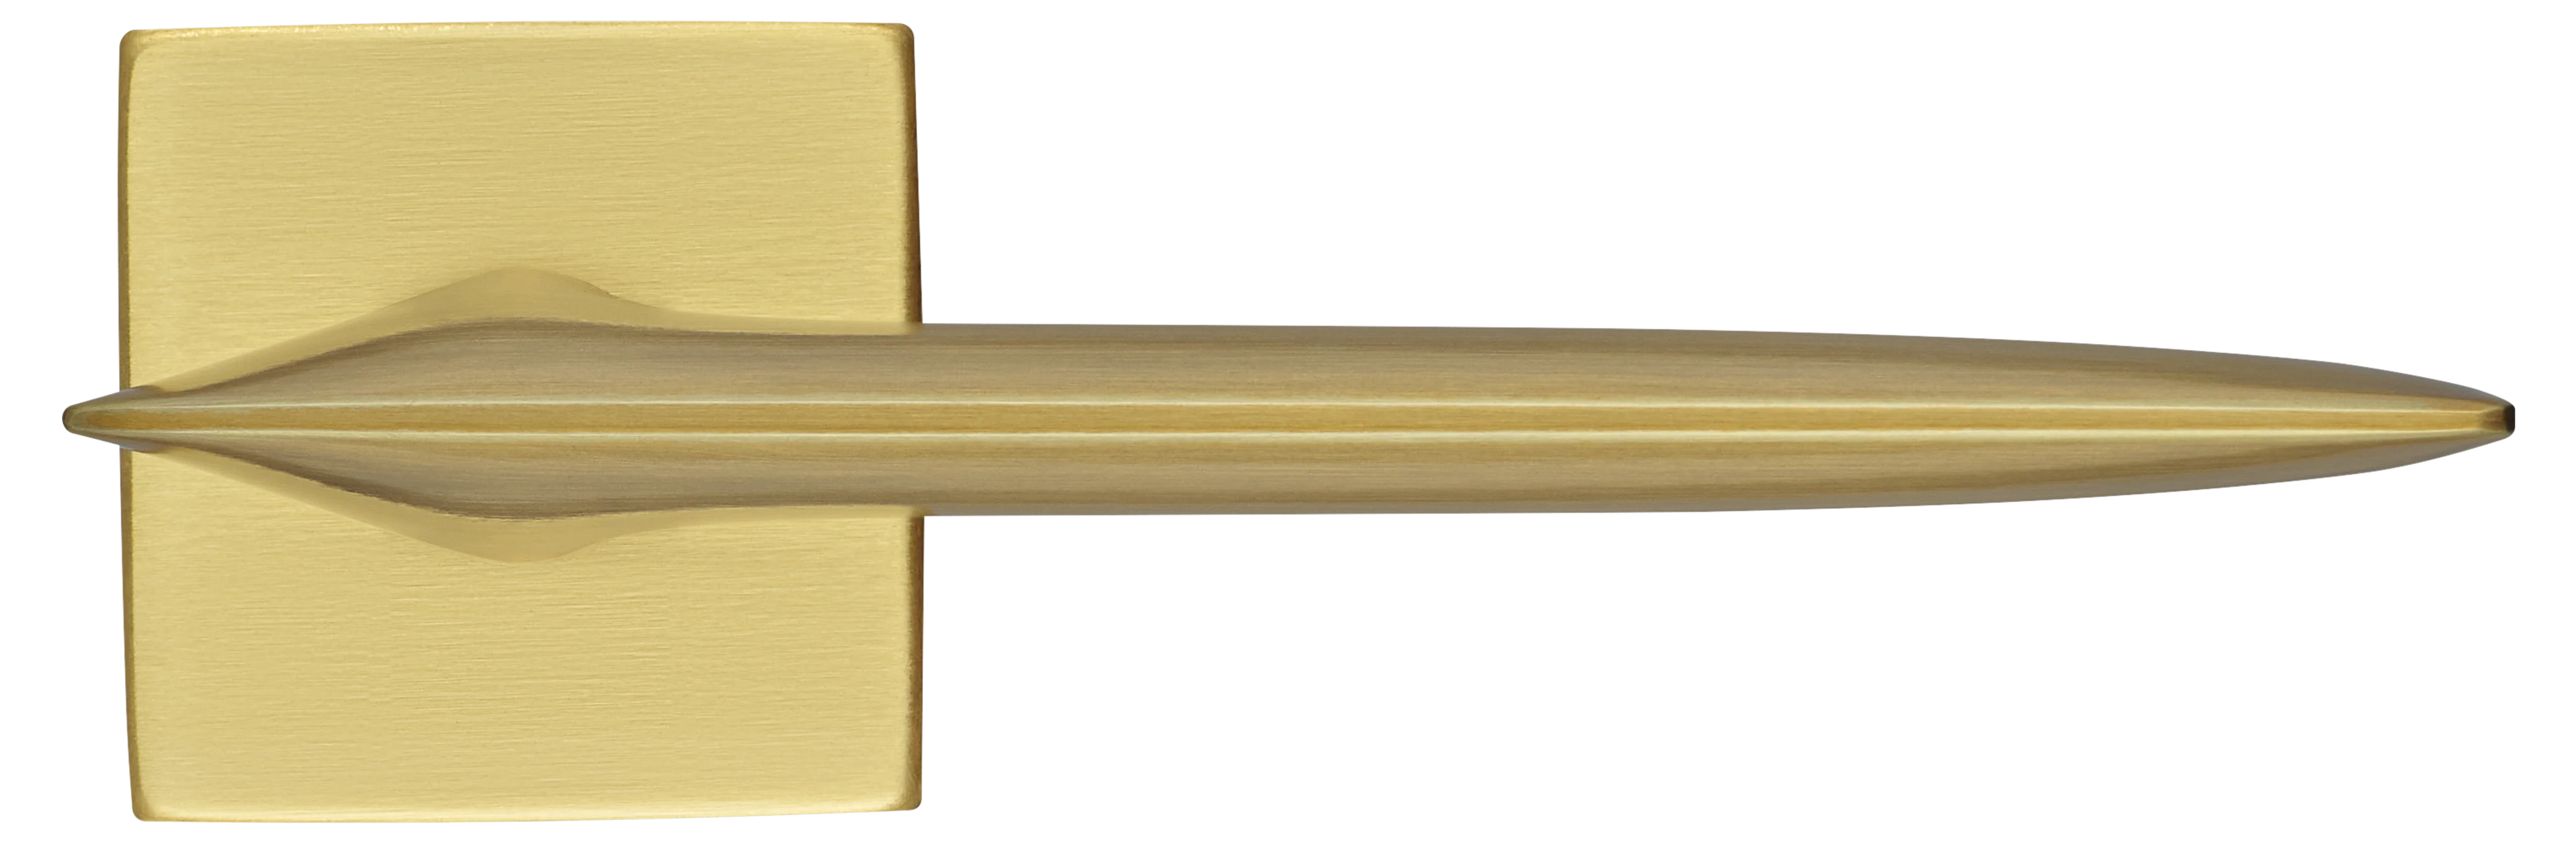 GALACTIC S5 OSA, ручка дверная, цвет -  матовое золото фото купить в СПб